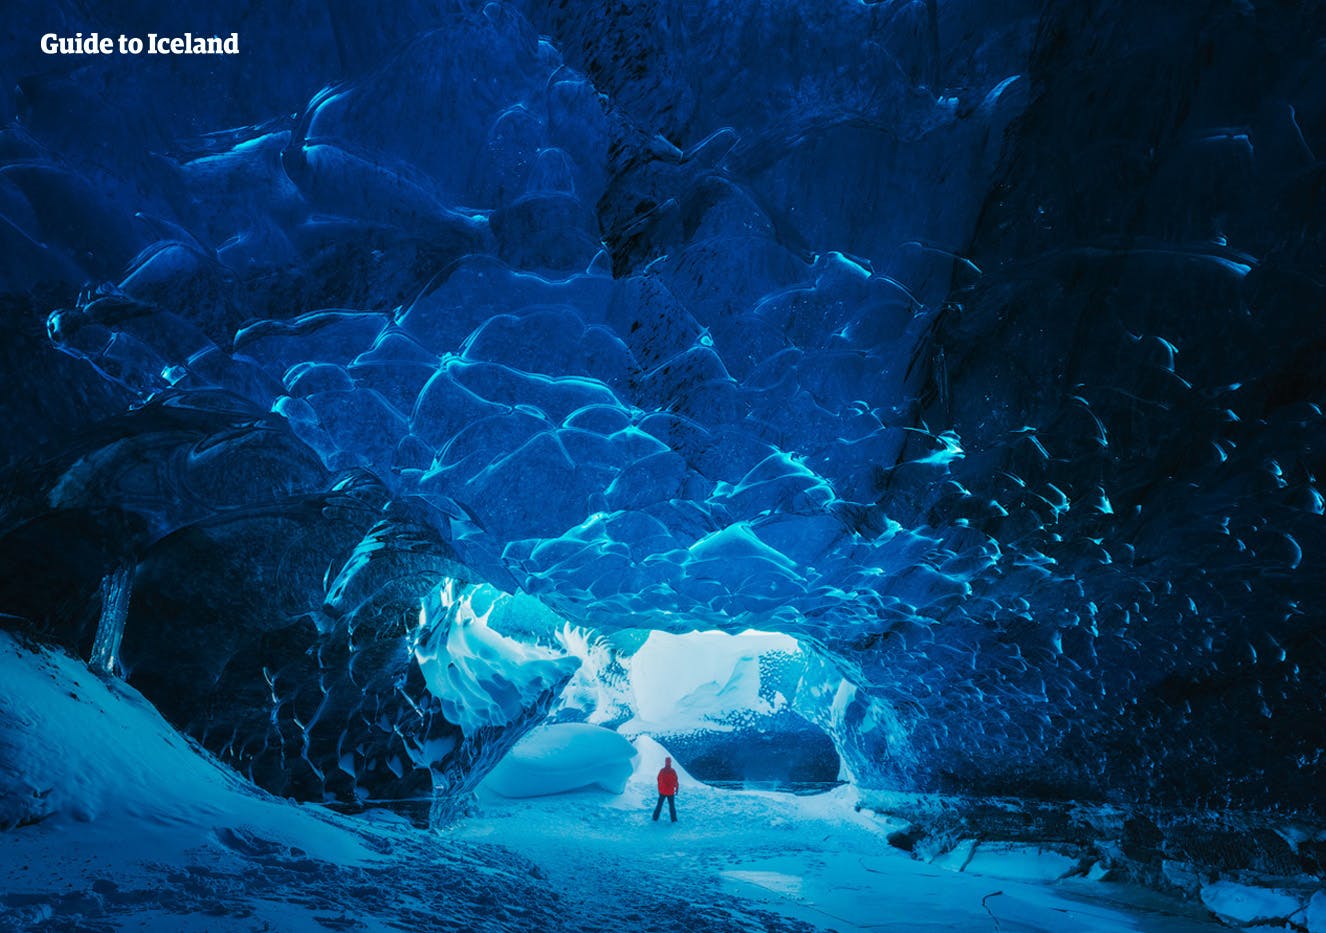 Wyprawa do jaskini lodowej na Islandii zabierze Cię do świata ukrytego pod największą w Europie pokrywą lodową.